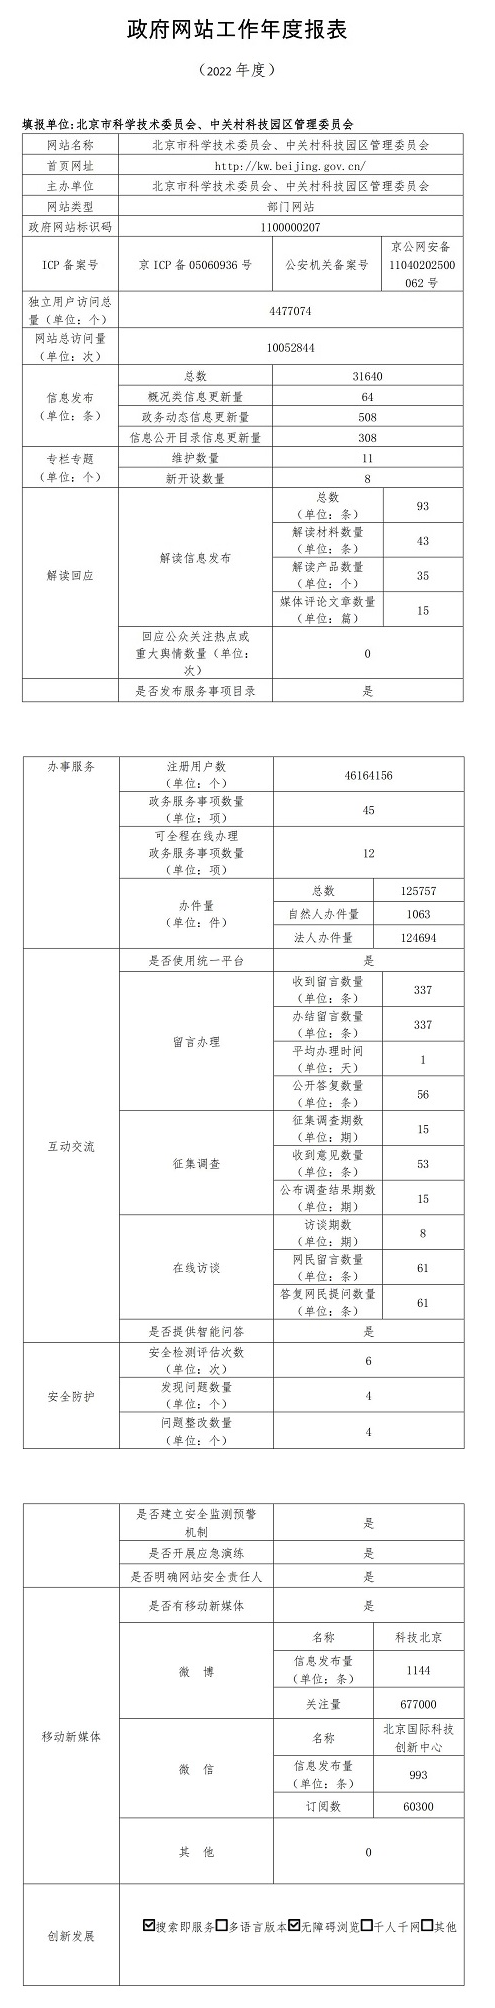 北京市科學技術委員會、中關村科技園區管理委員會2022年政府網站年度工作報表